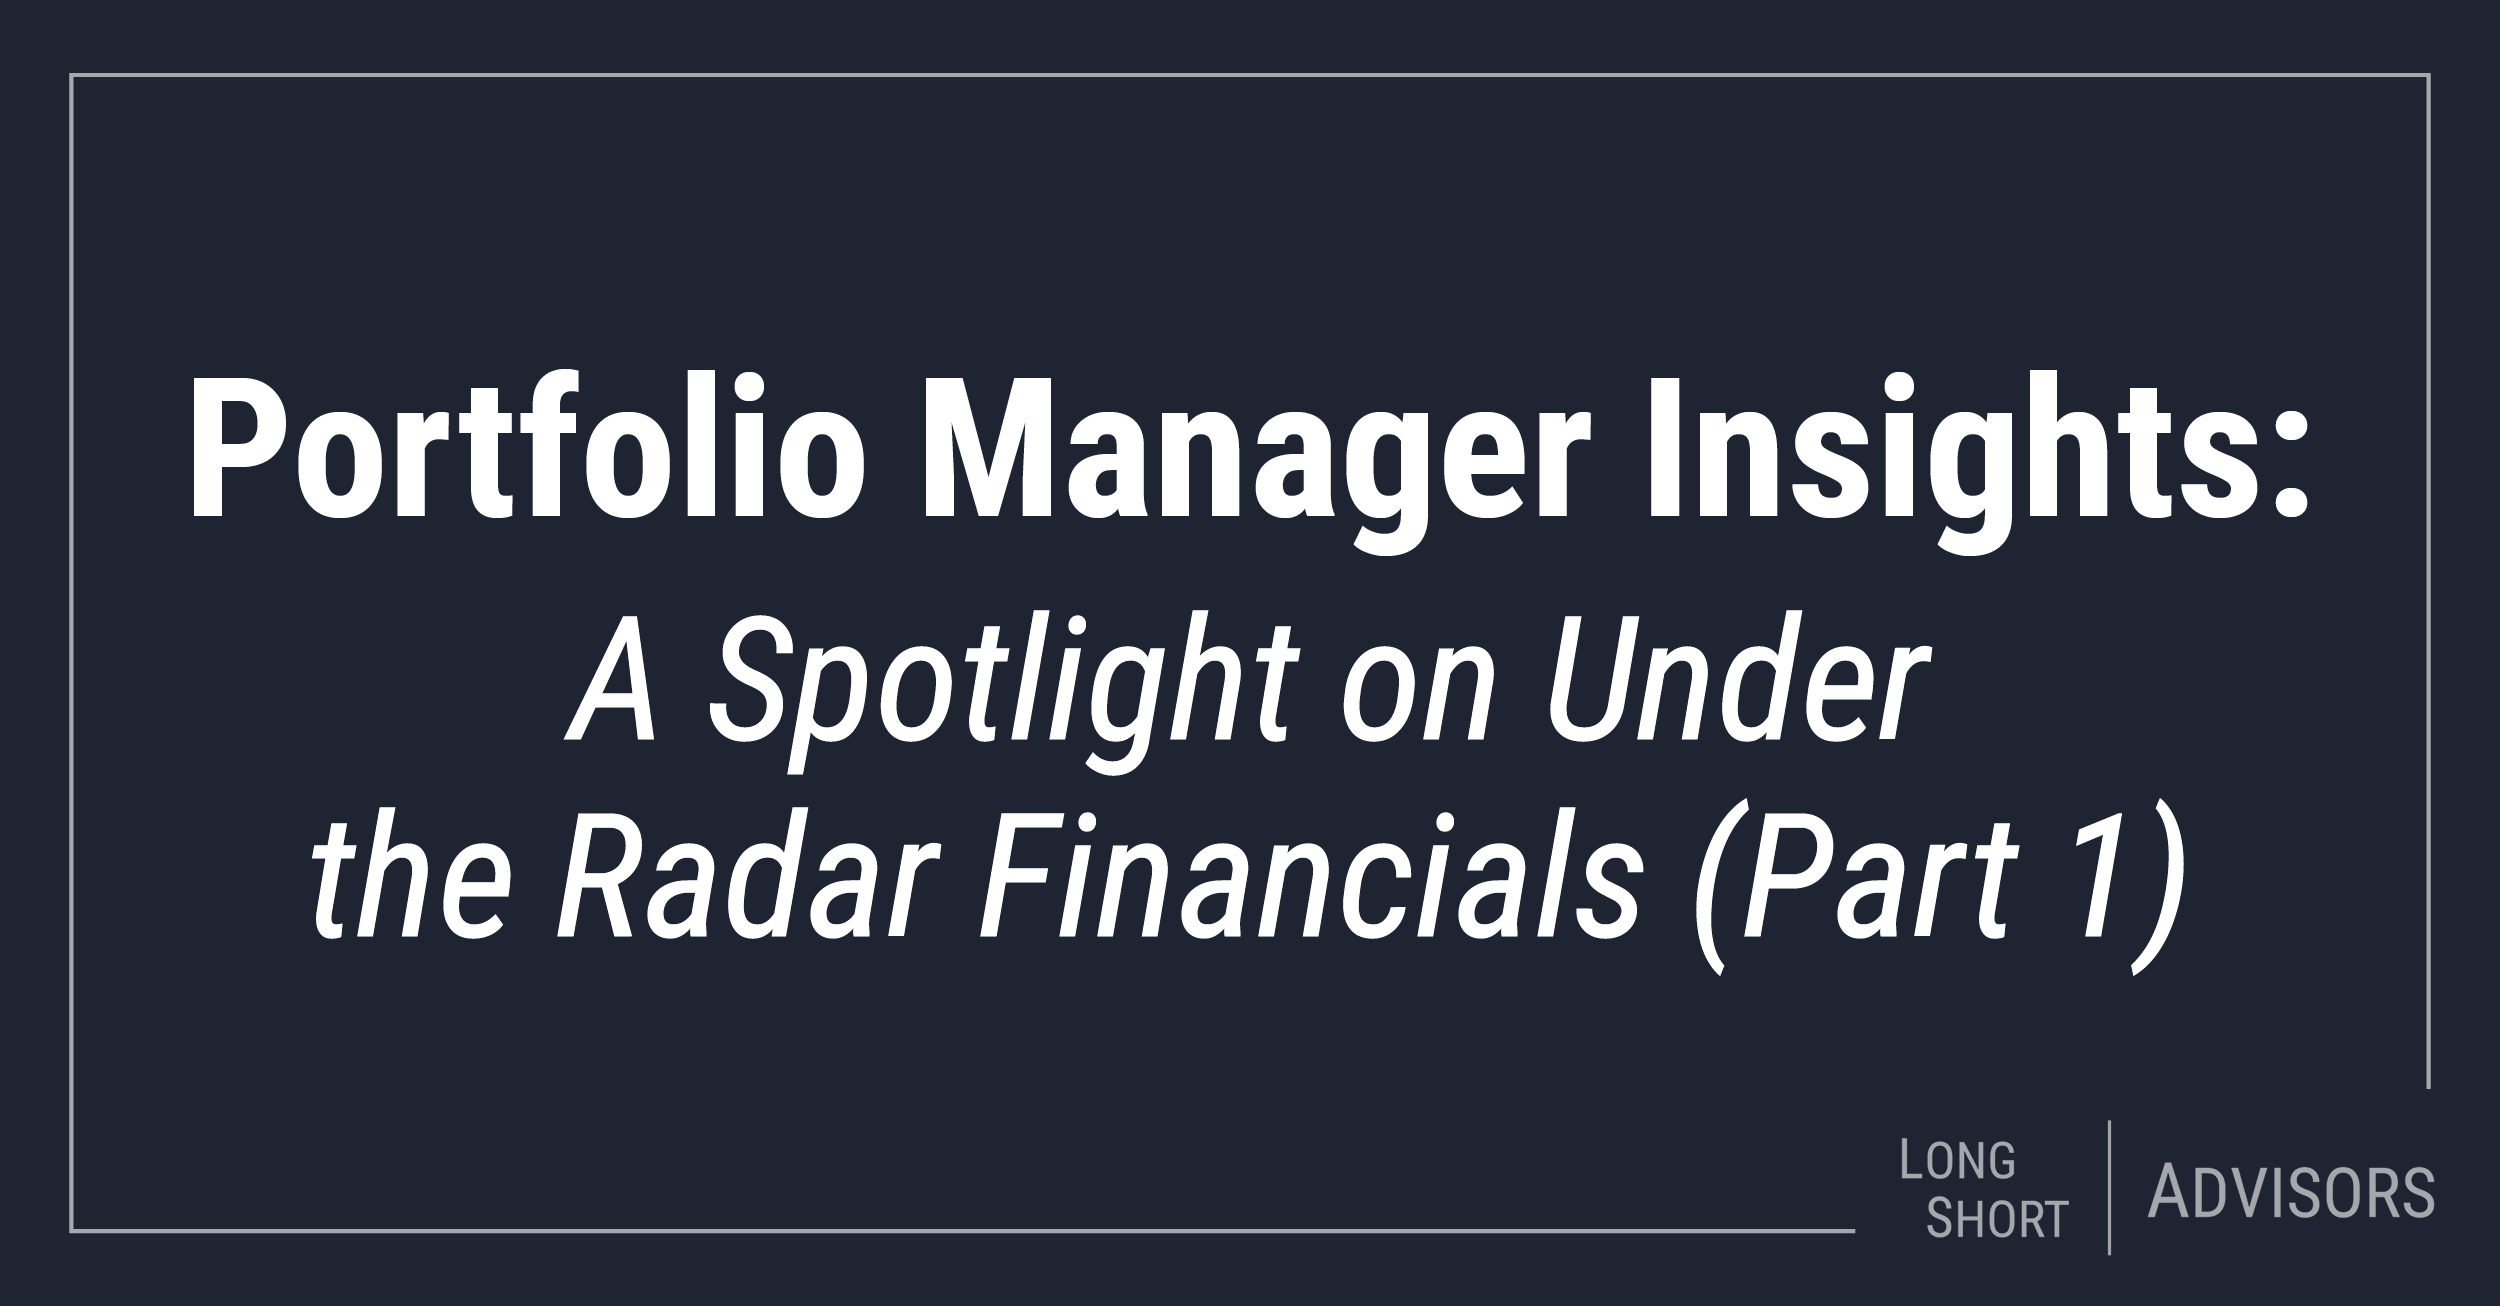 Portfolio Manager Insights: A Spotlight on Under the Radar Financials (Part 1)